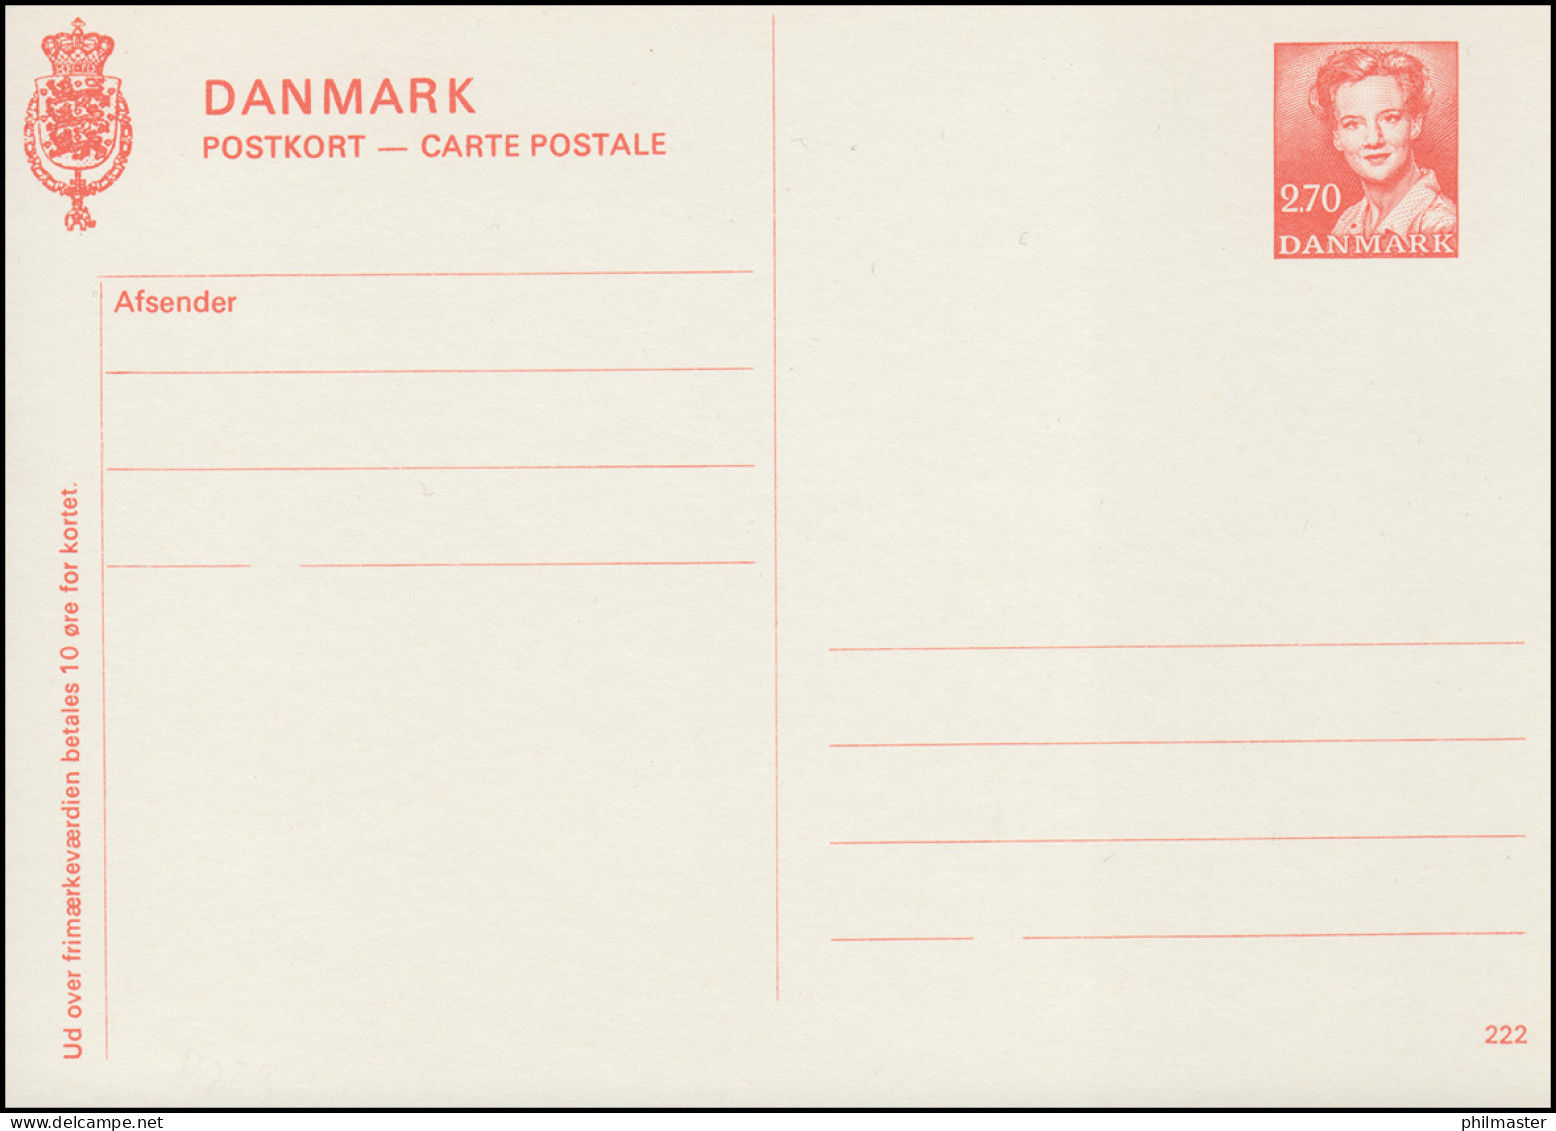 Dänemark Postkarte P 279 Königin Margrethe 2,70 Kronen, Kz. 222, ** - Entiers Postaux